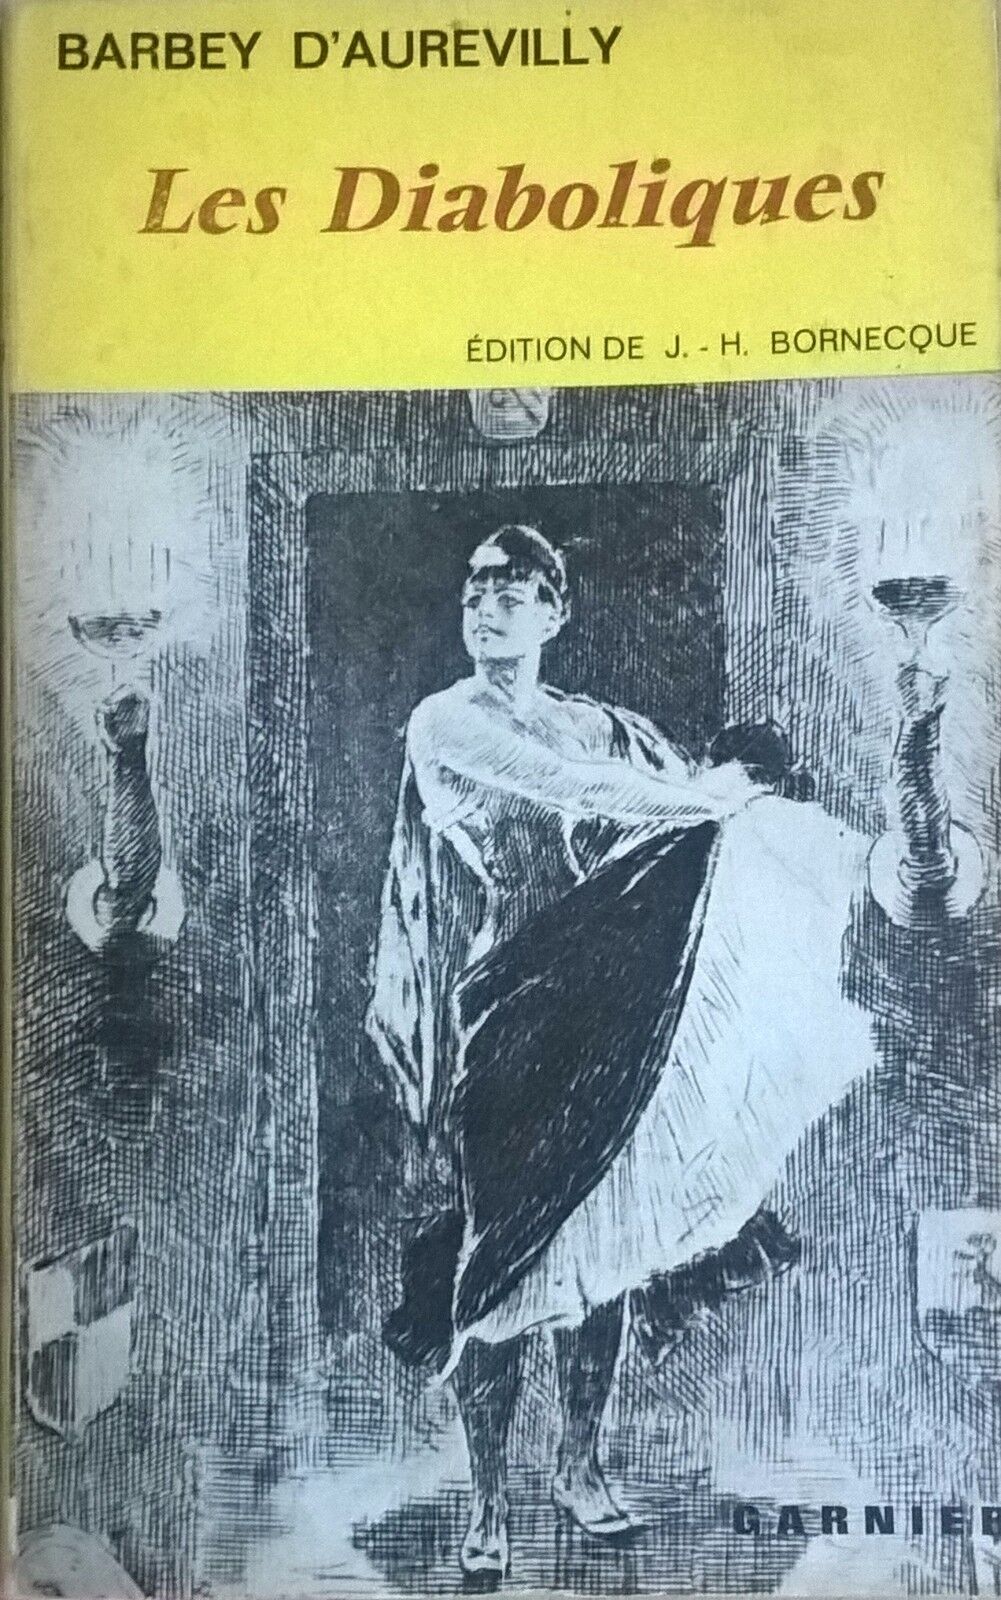 Les Diaboliques - di Barbey d'Aurevilly (1963,  Edition De J. - H. Bornecque) Ca